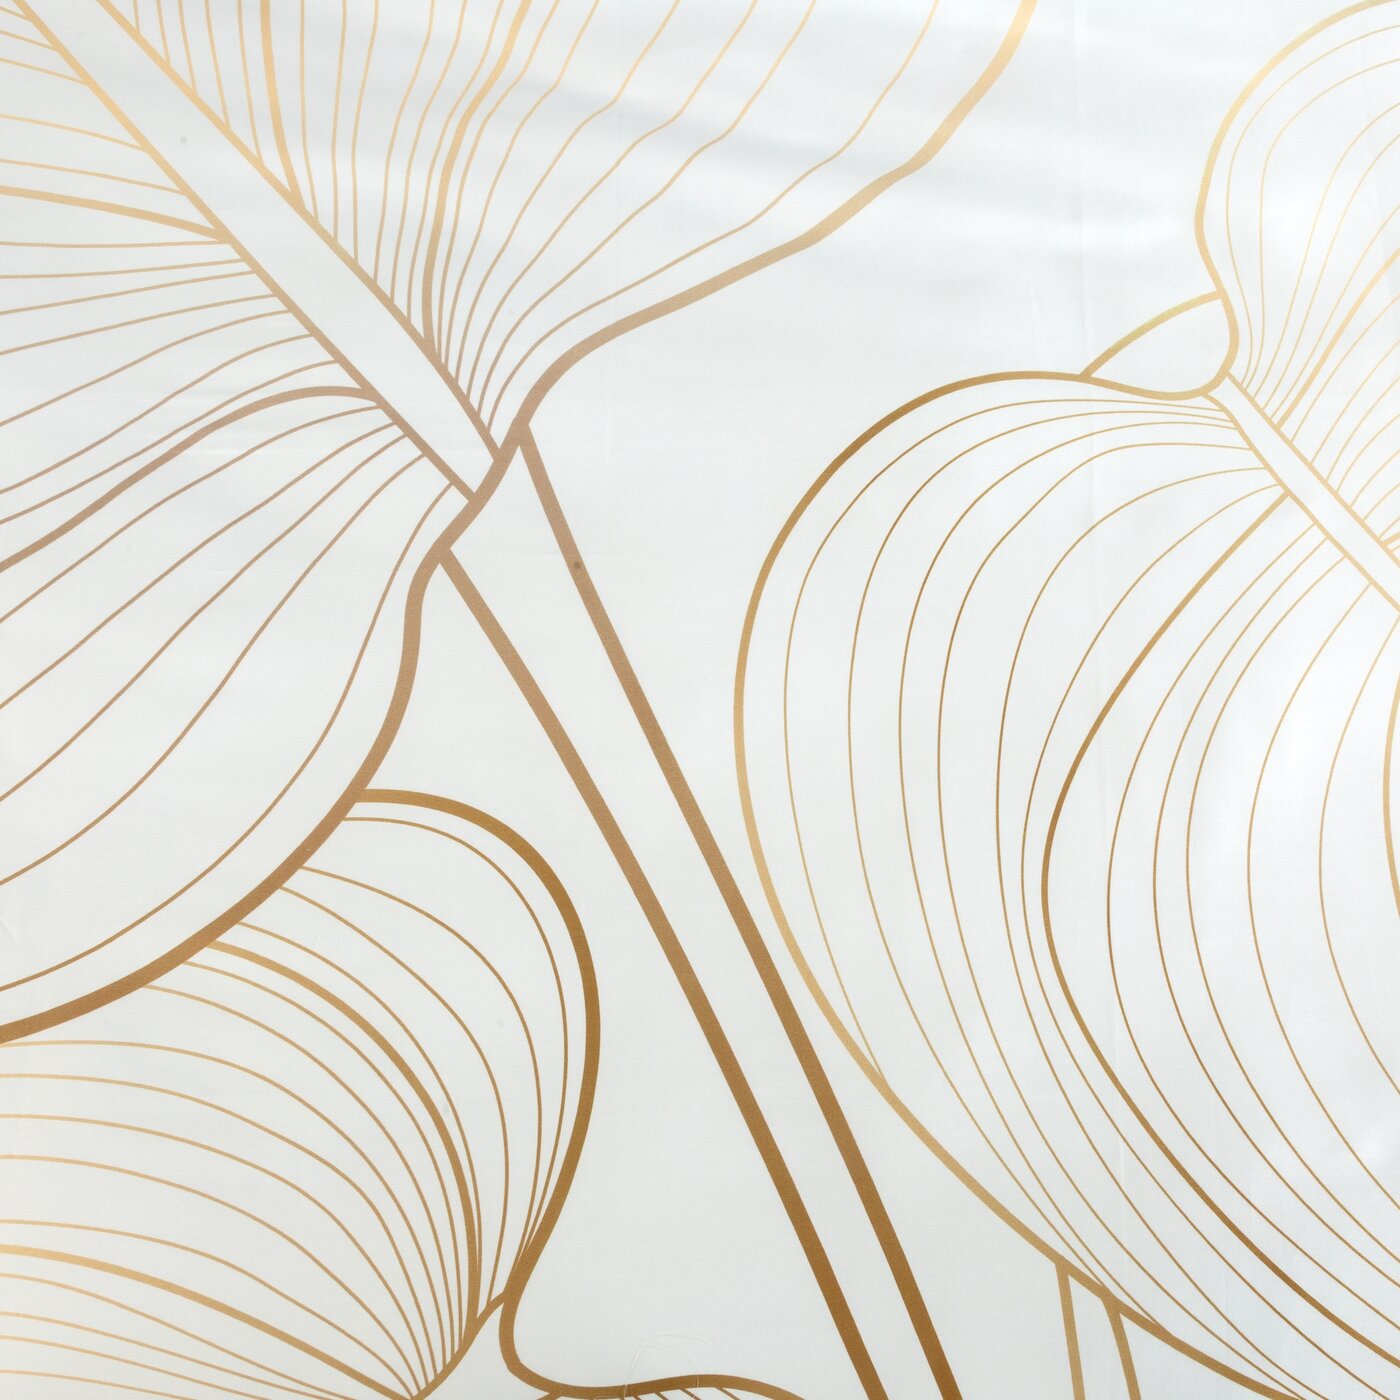 Lenjerie de Pat din satin de bumbac care combină motive geometrice și botanice alb auriu Colecția Limitată BLANCA 4 Perdele de Poveste